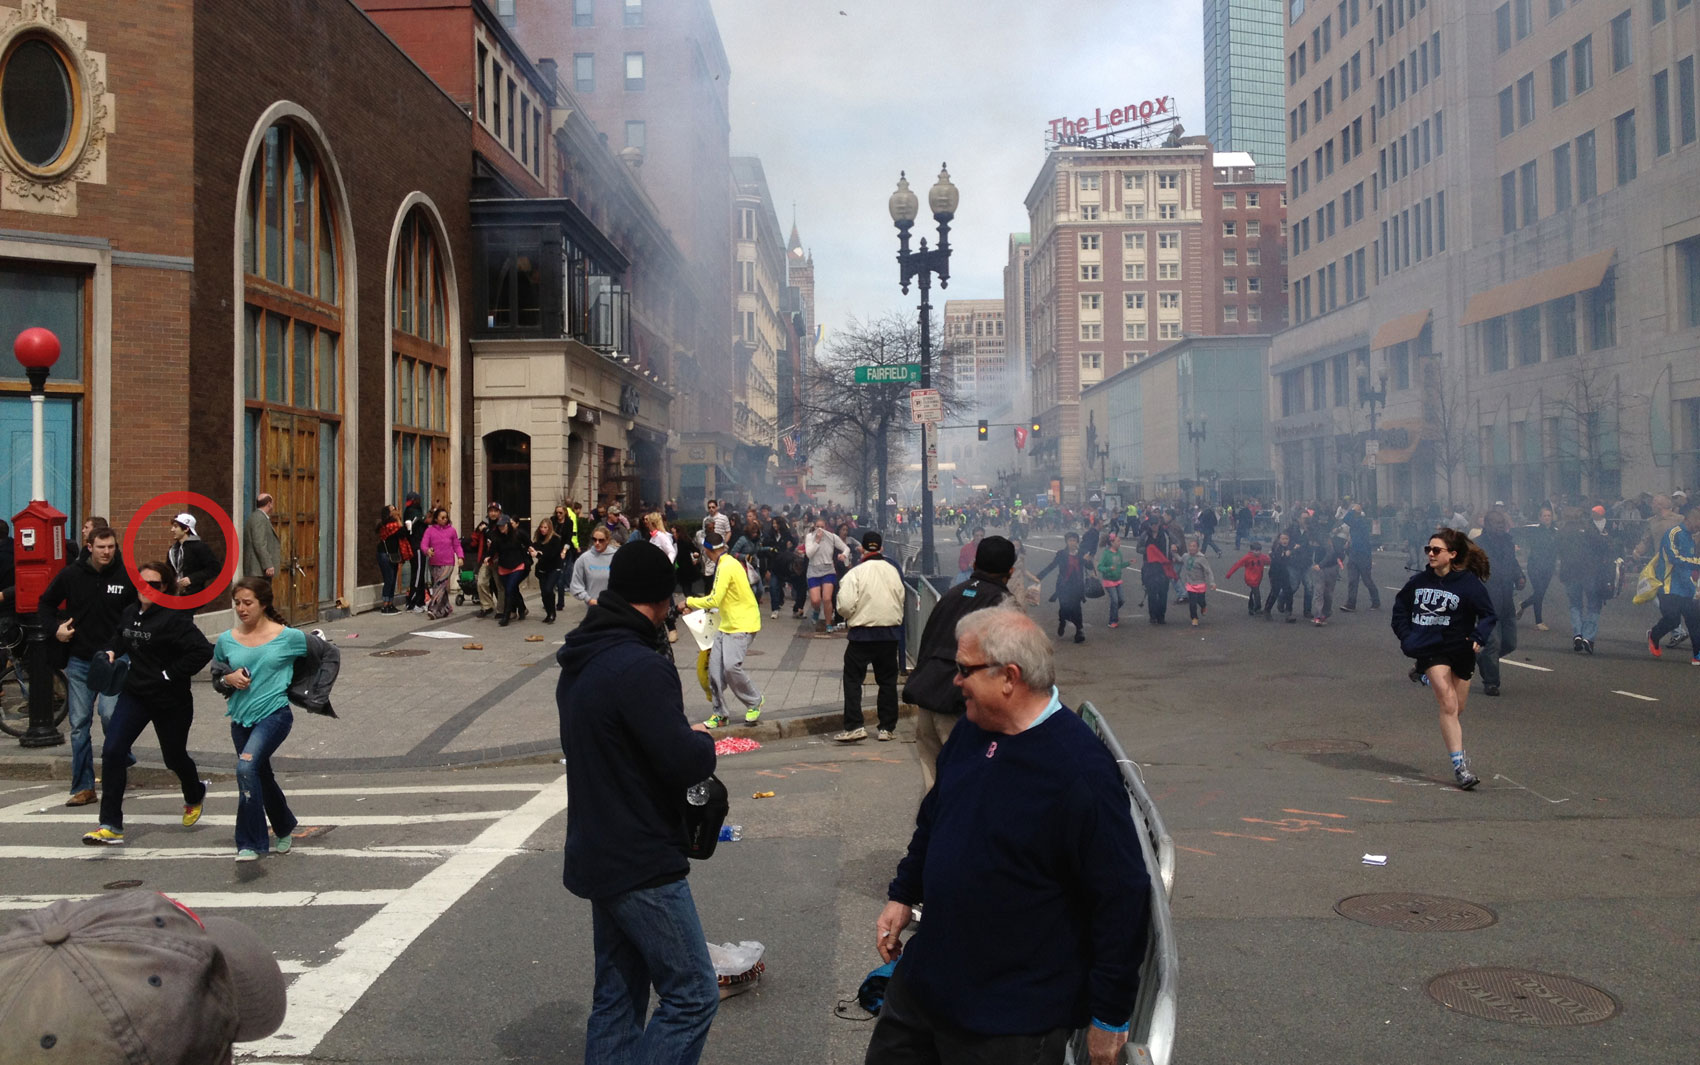 Foto de segunda-feira (15), dia do ataque, mostra Dzhokhar A. Tsarnaev, de 19 anos, à esquerda deixando a área das explosões. A imagem foi destacada pela agência Associated Press nesta sexta (15)